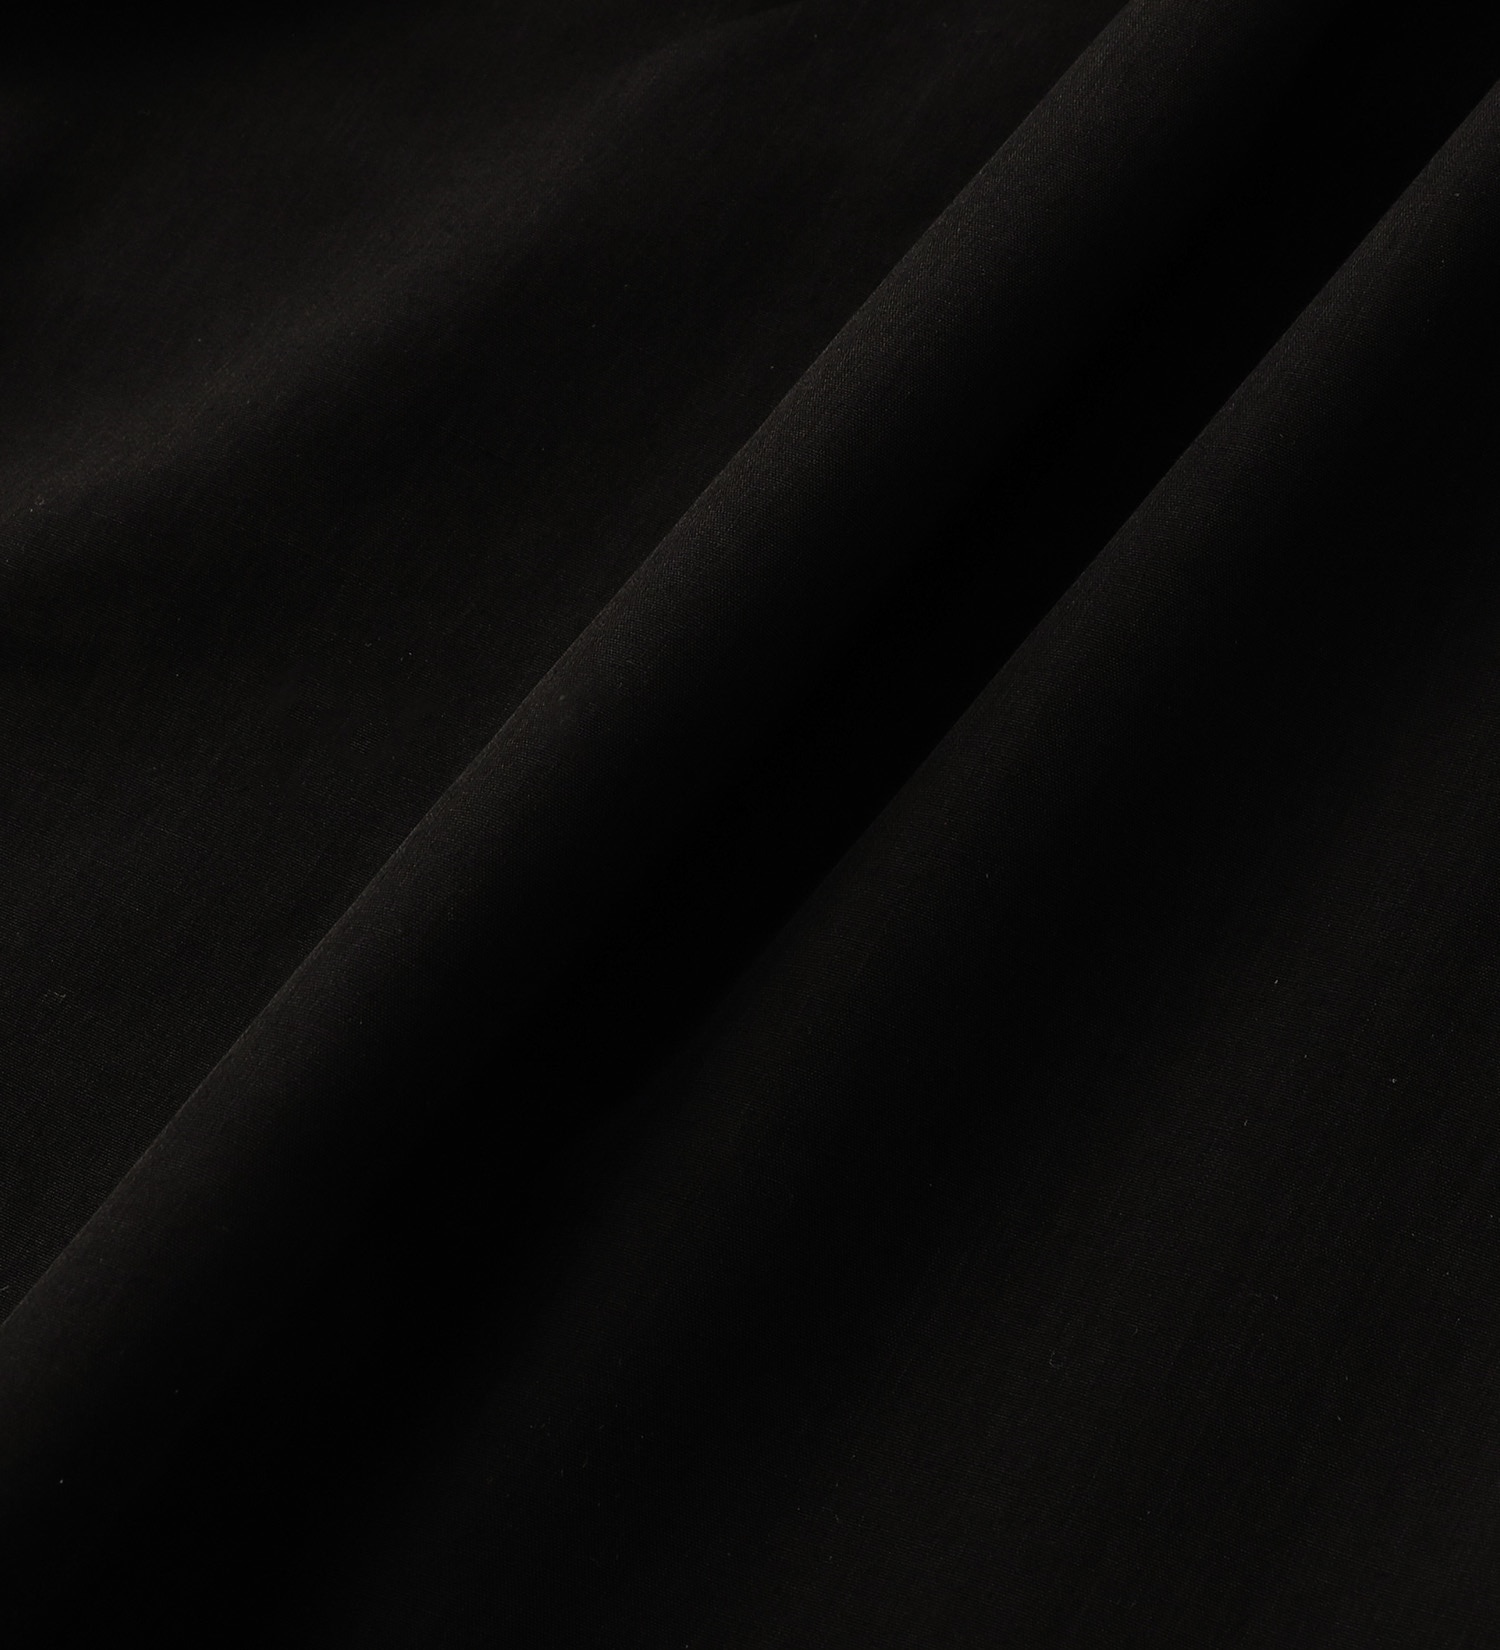 EDWIN(エドウイン)の【BLACKFRIDAY】EDWIN ギャザーブラウス【アウトレット店舗・WEB限定】|トップス/シャツ/ブラウス/レディース|ブラック